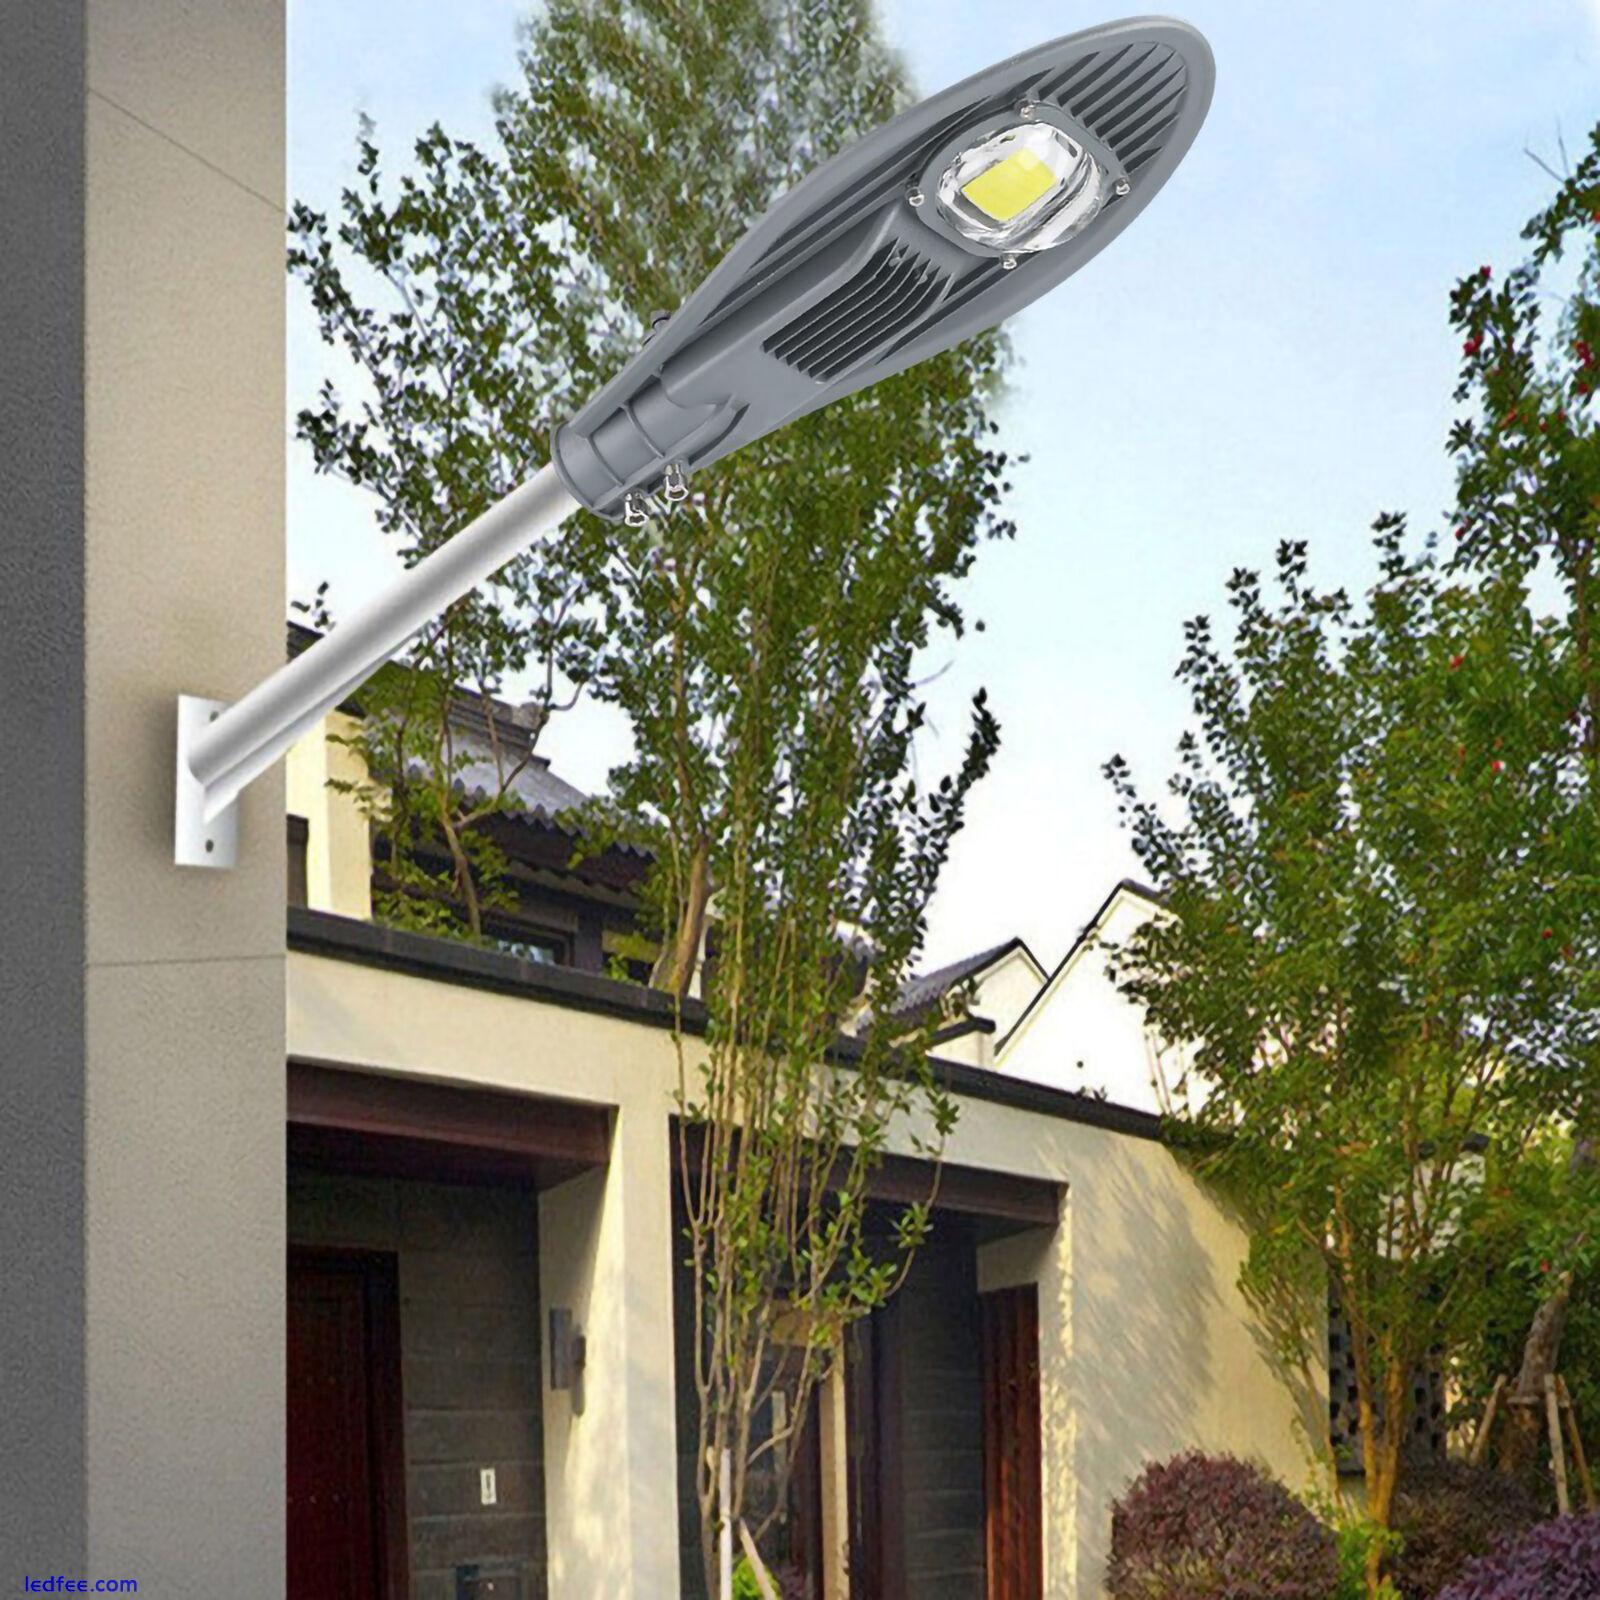 LED Road Street Flood Light Lamp For Outdoor Garden Yard Lamp Lighting☜ 0 